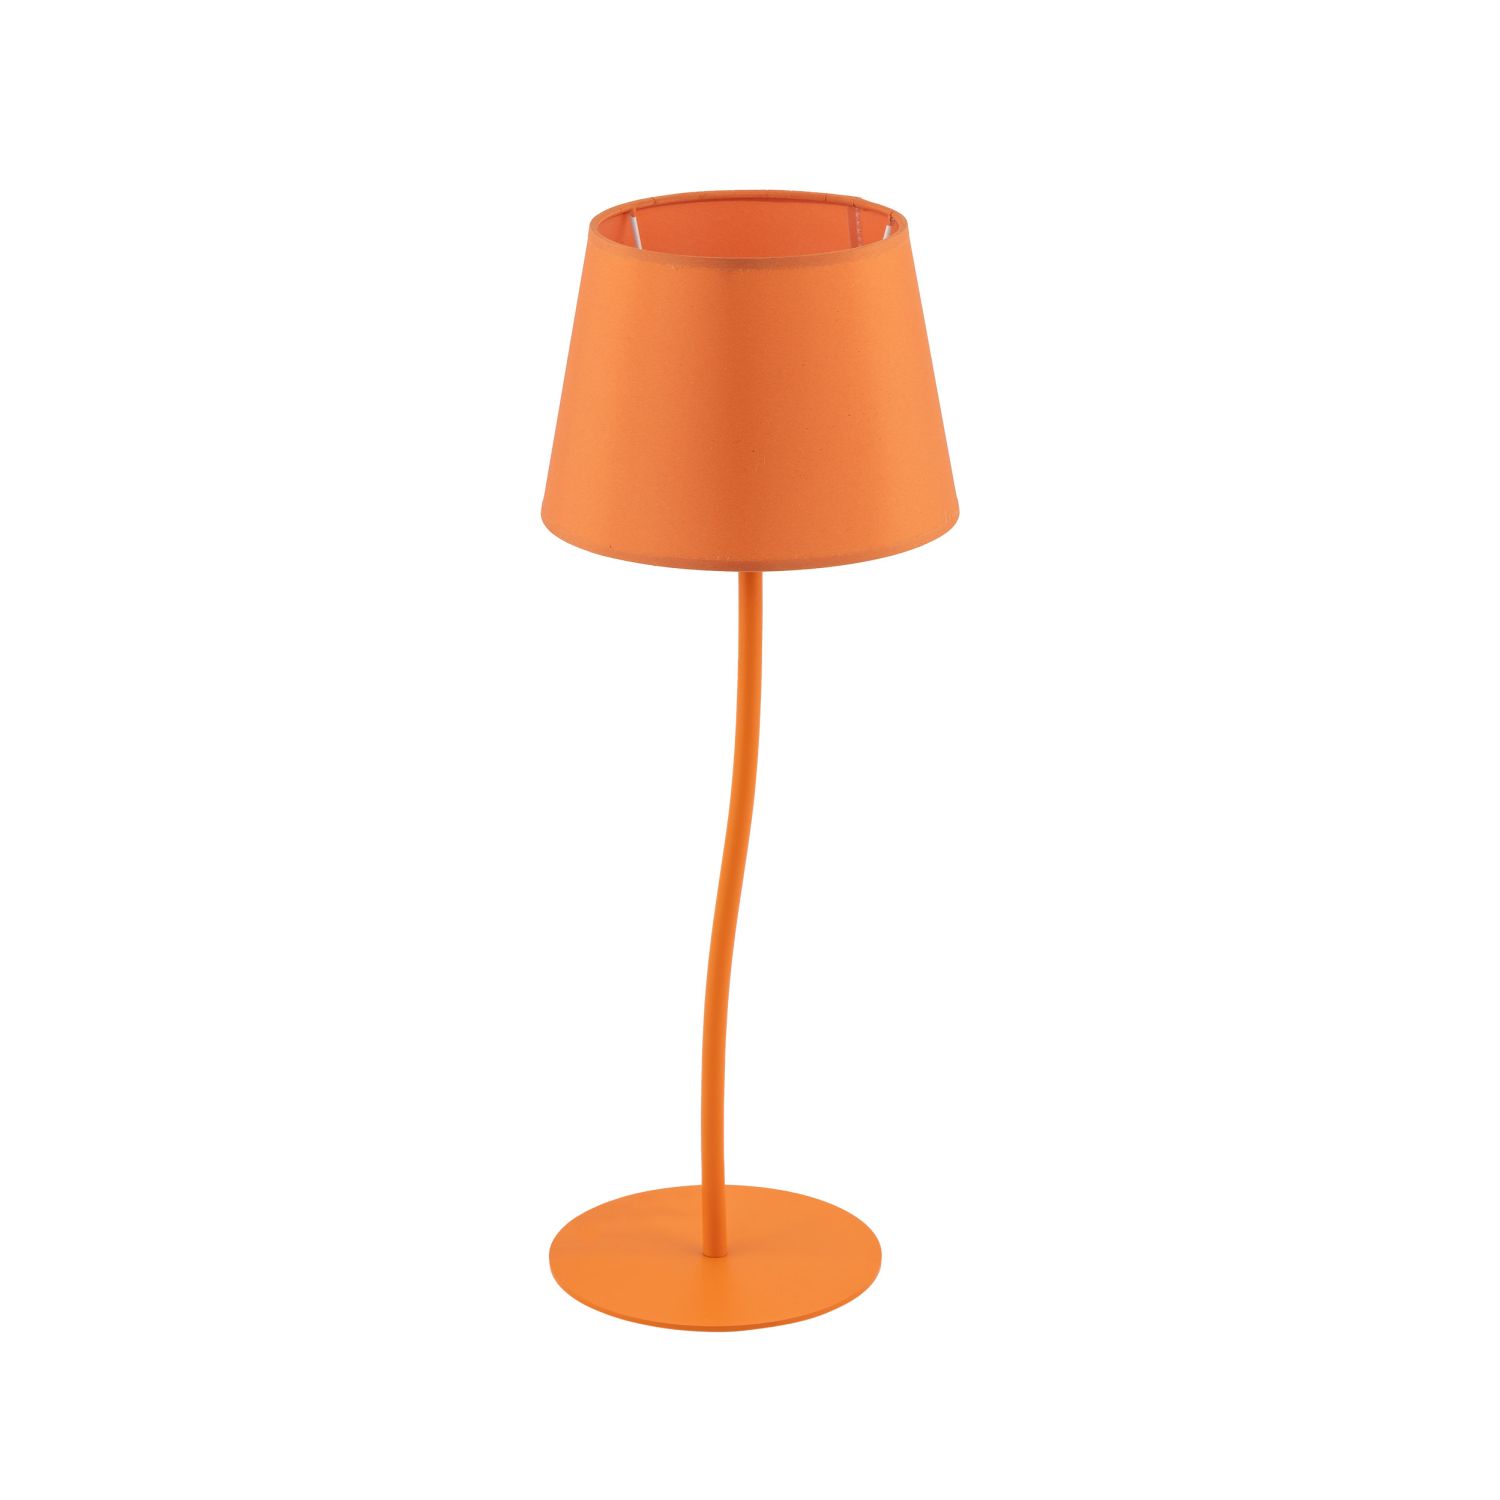 Kinderzimmerlampe Tisch Orange H: 37cm klein E27 Metall Stoff